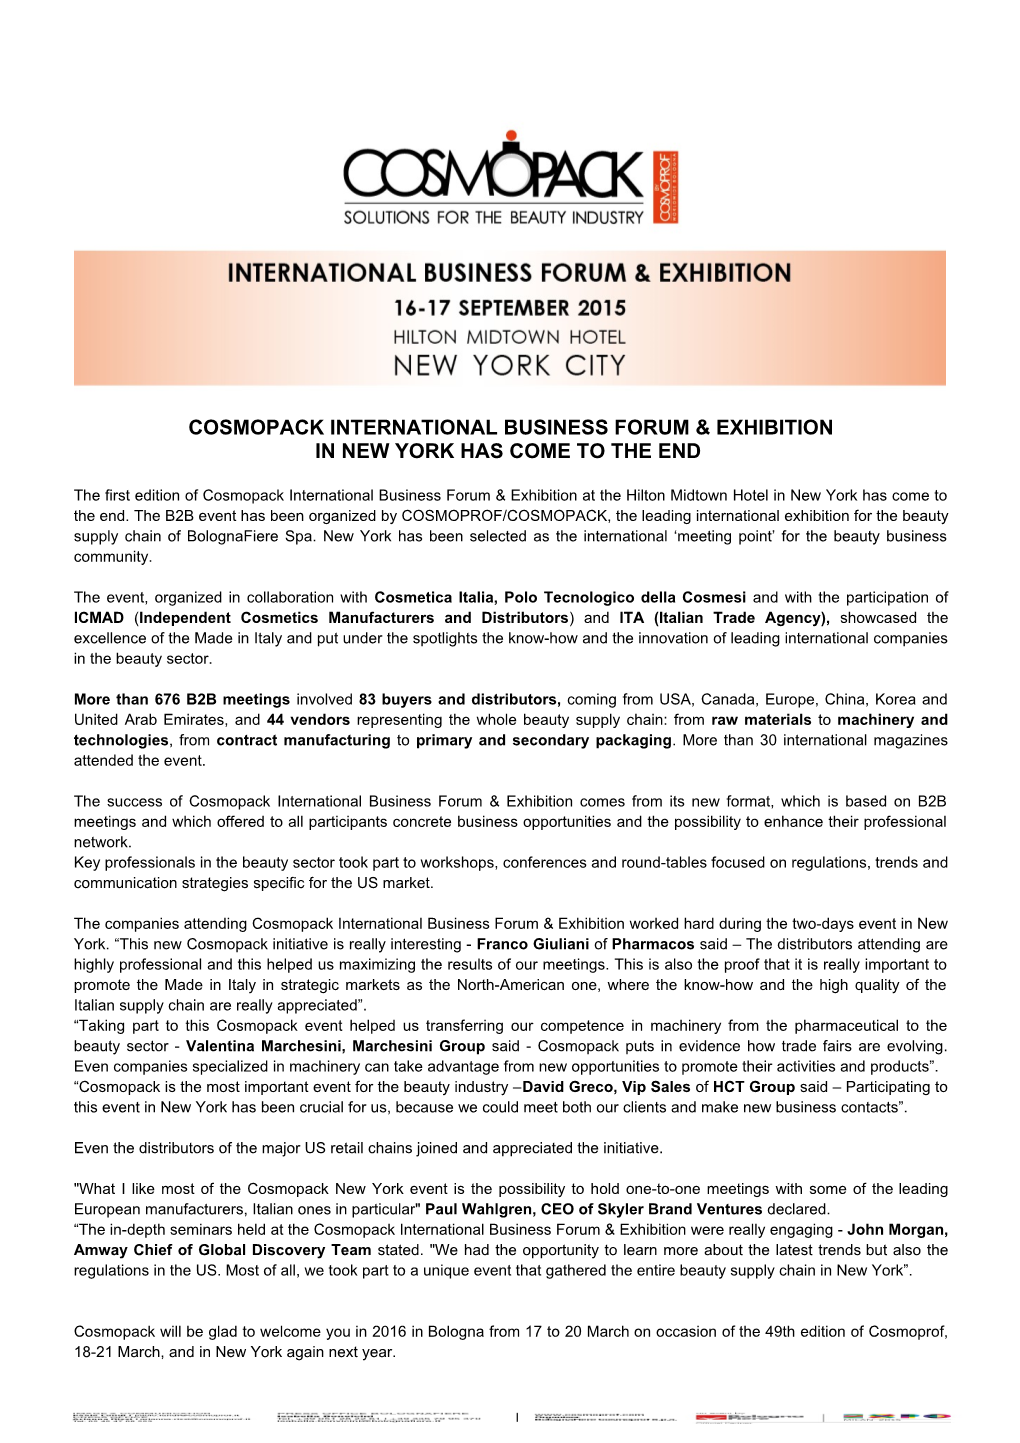 Cosmopack International Business Forum & Exhibition